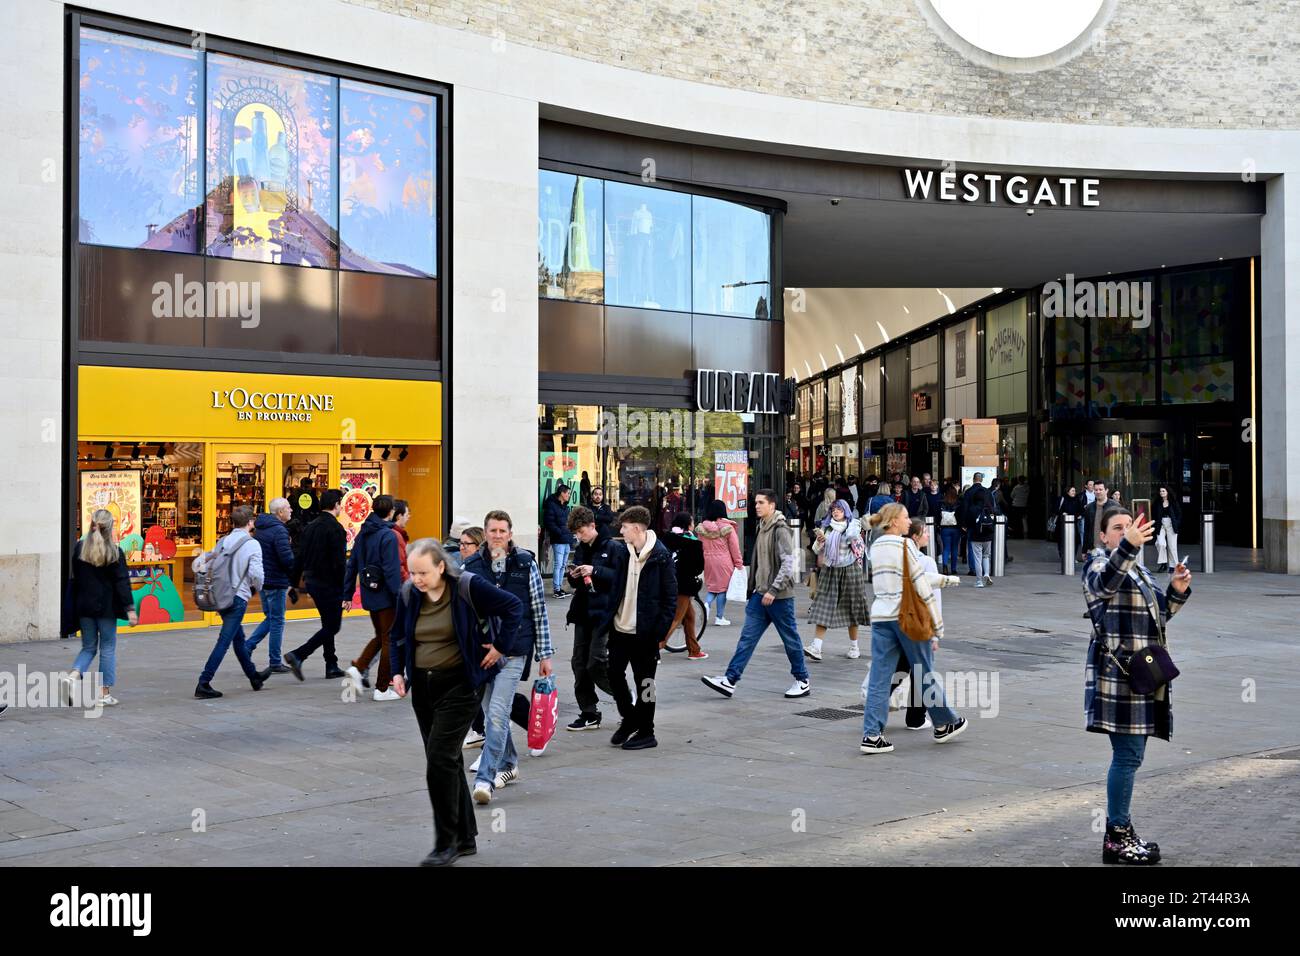 Ingresso esterno al centro commerciale Westgate, Oxford, Regno Unito Foto Stock